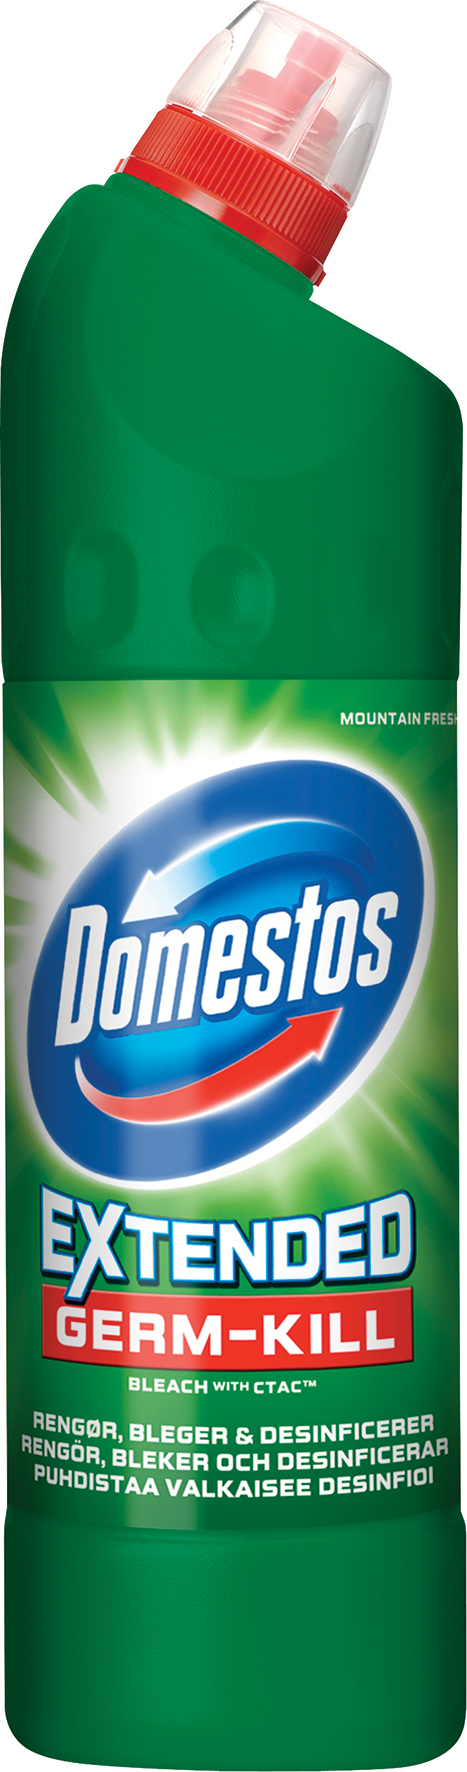 [8556775] Domestos Mountain Fresh WC-Ren